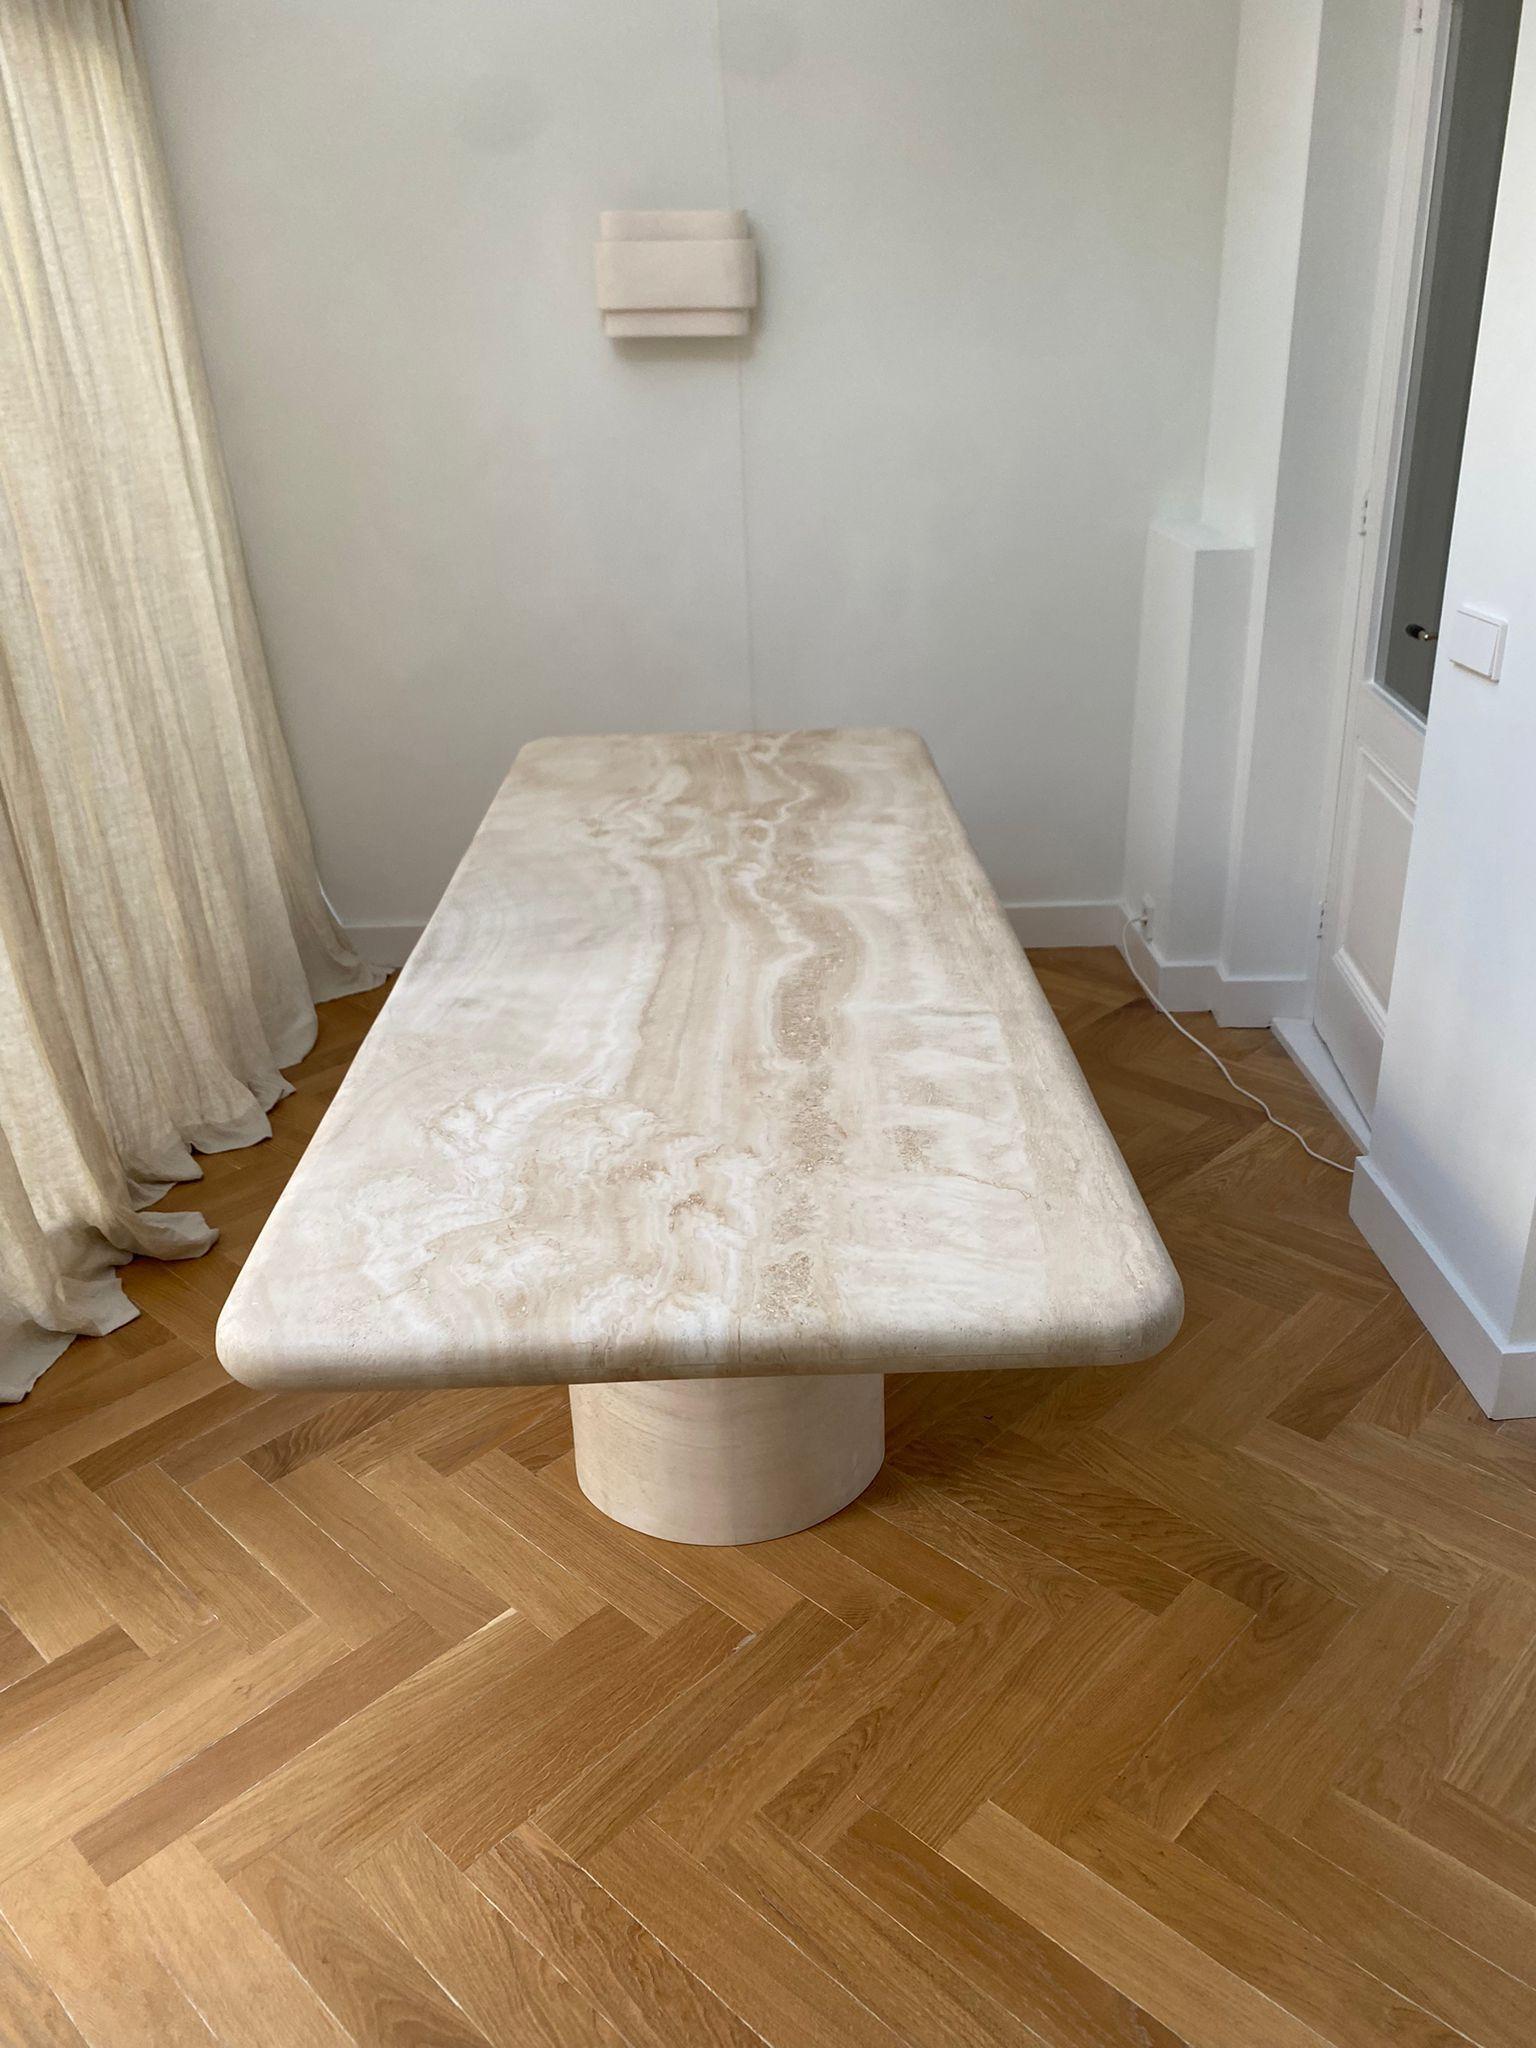 Eine funktionelle Skulptur des Raumes. Dieser organisch-moderne, minimalistische Tisch aus getrommeltem Travertin hat eine dicke Tischplatte mit geschwungenen Kanten, die elegant auf einer geschwungenen zylindrischen Säule ruht. 

Die markante